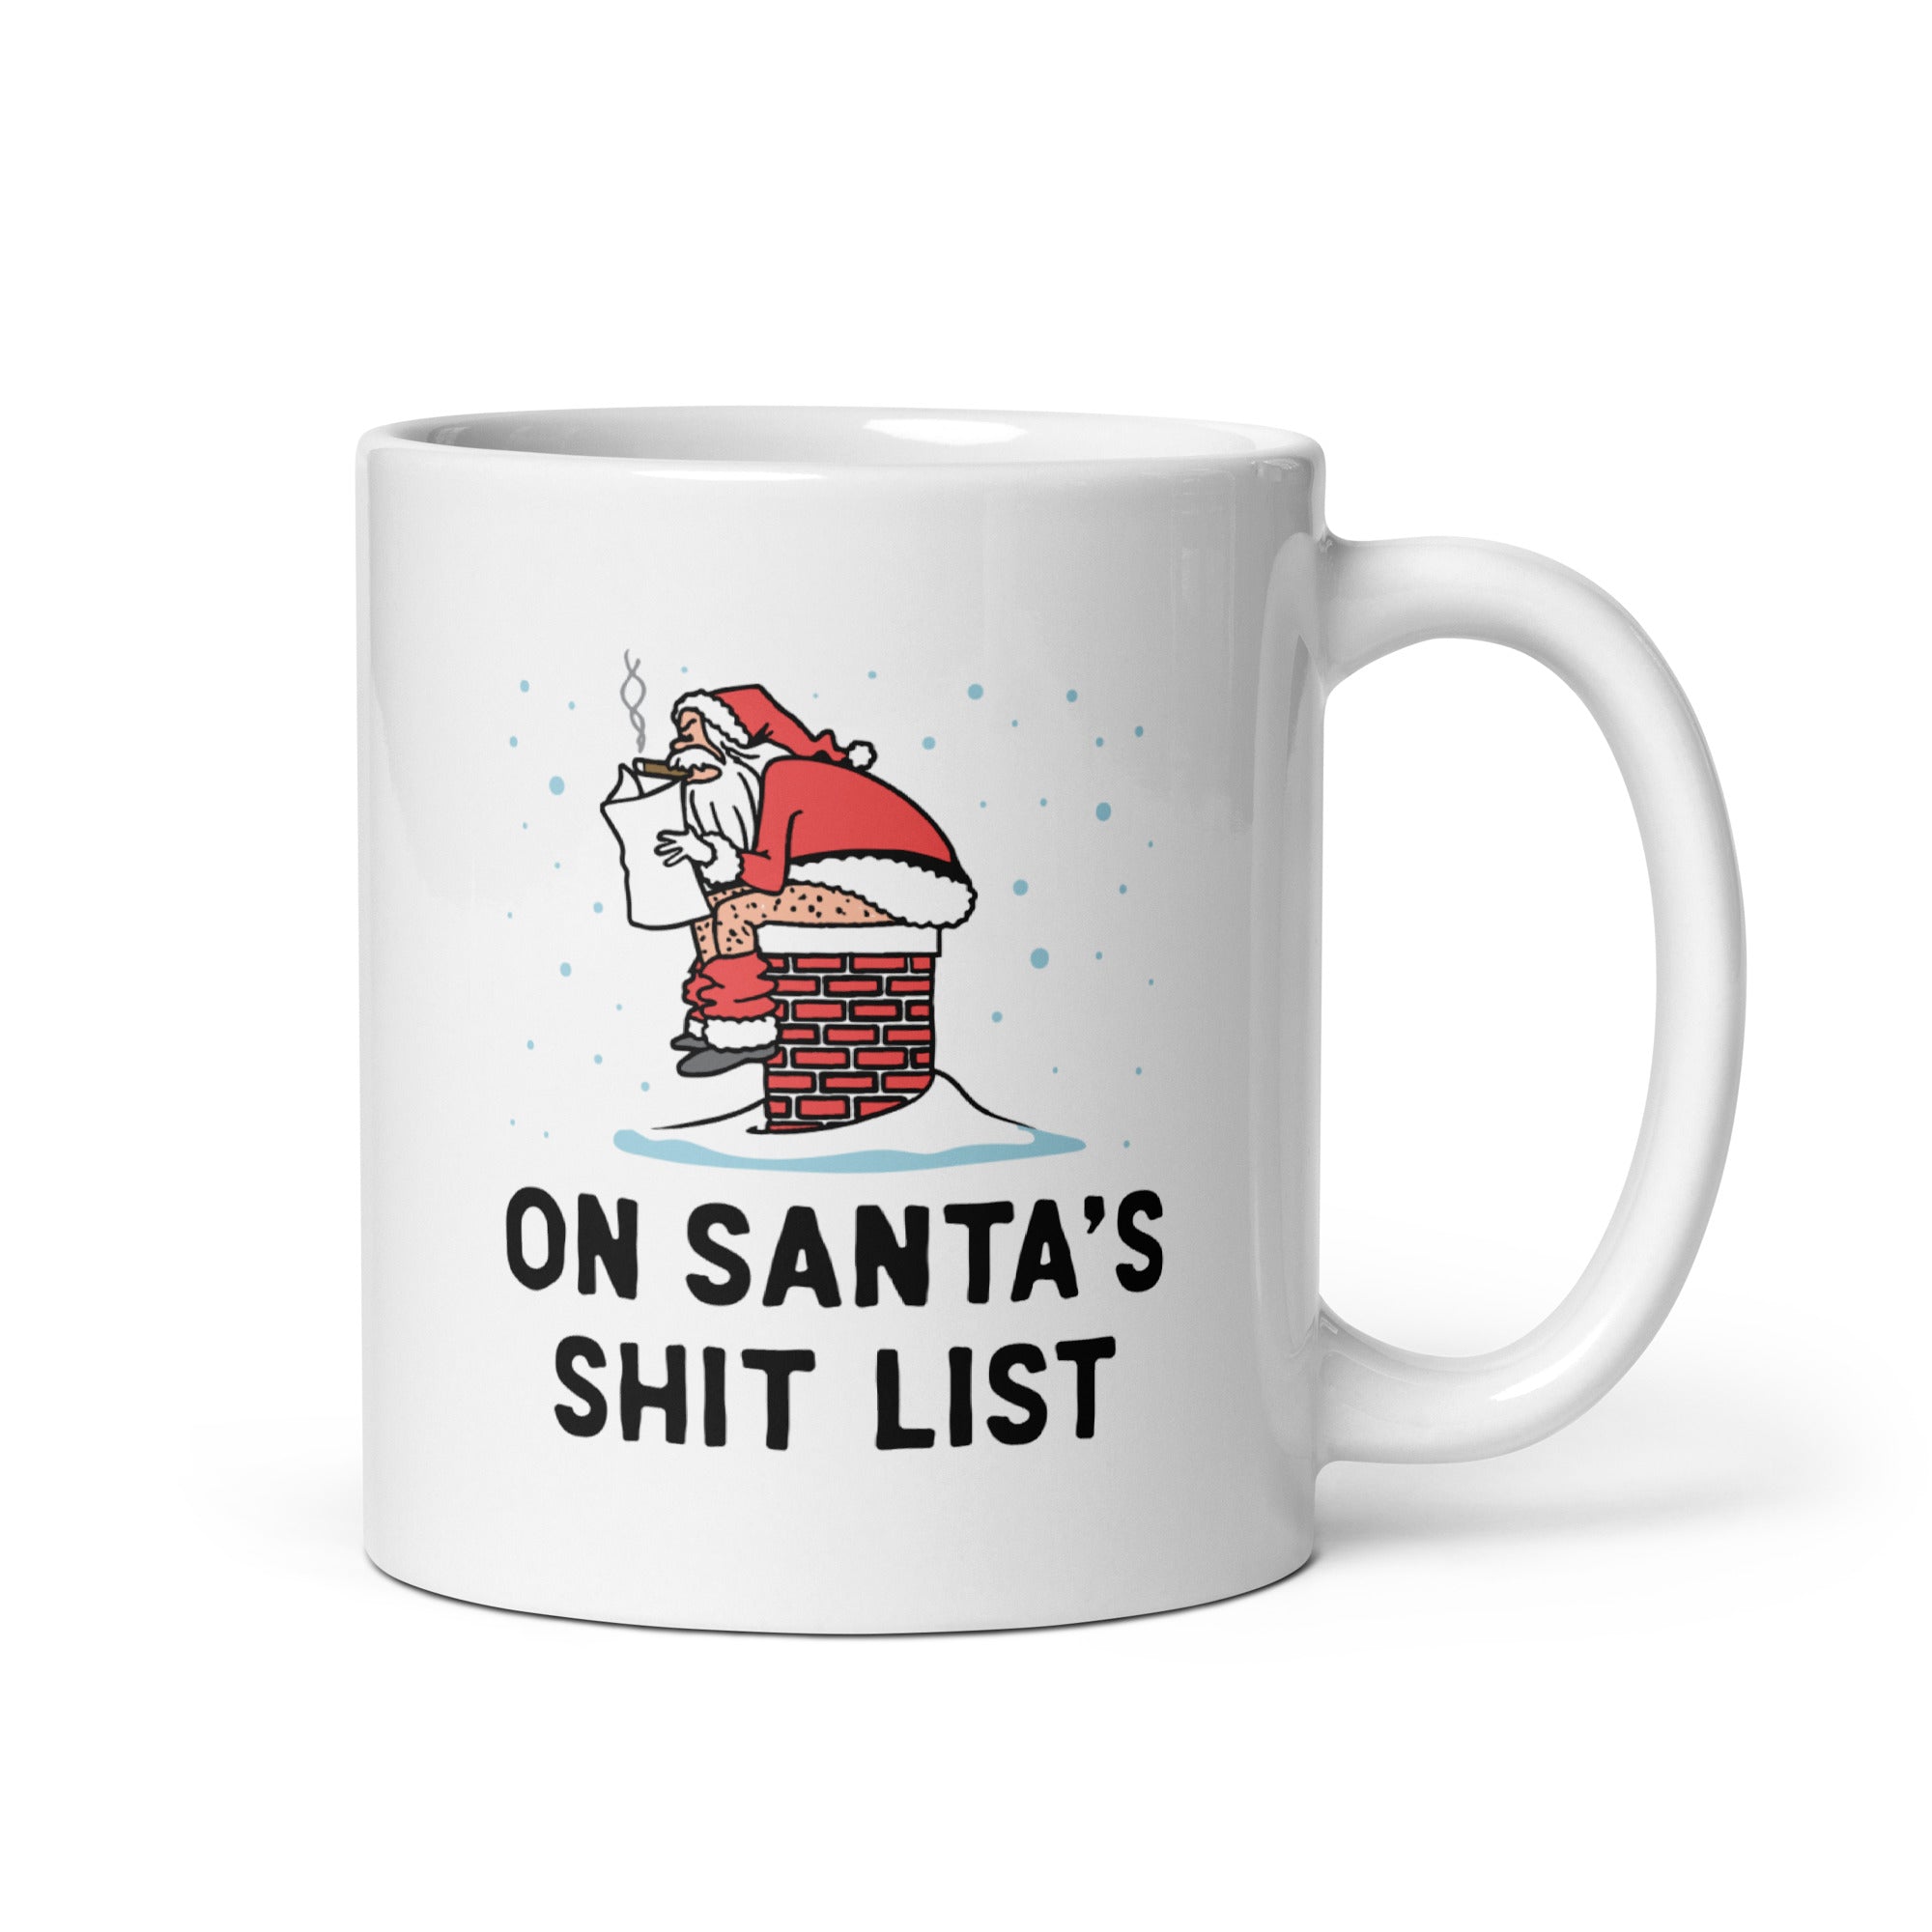 On Santa's Shit List - 11oz Coffee Mug